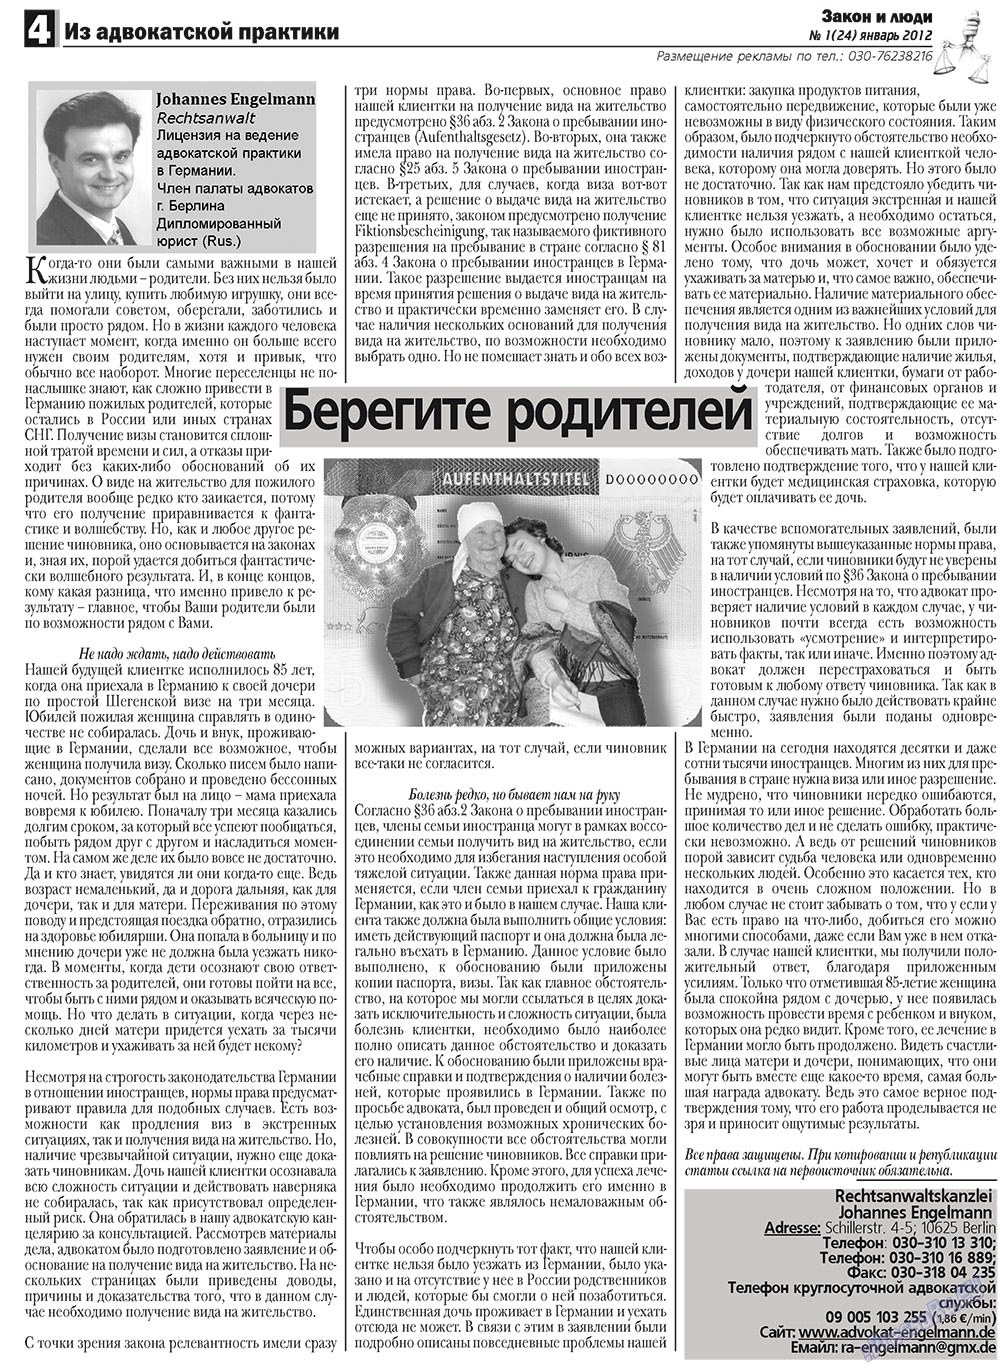 Закон и люди, газета. 2012 №1 стр.4